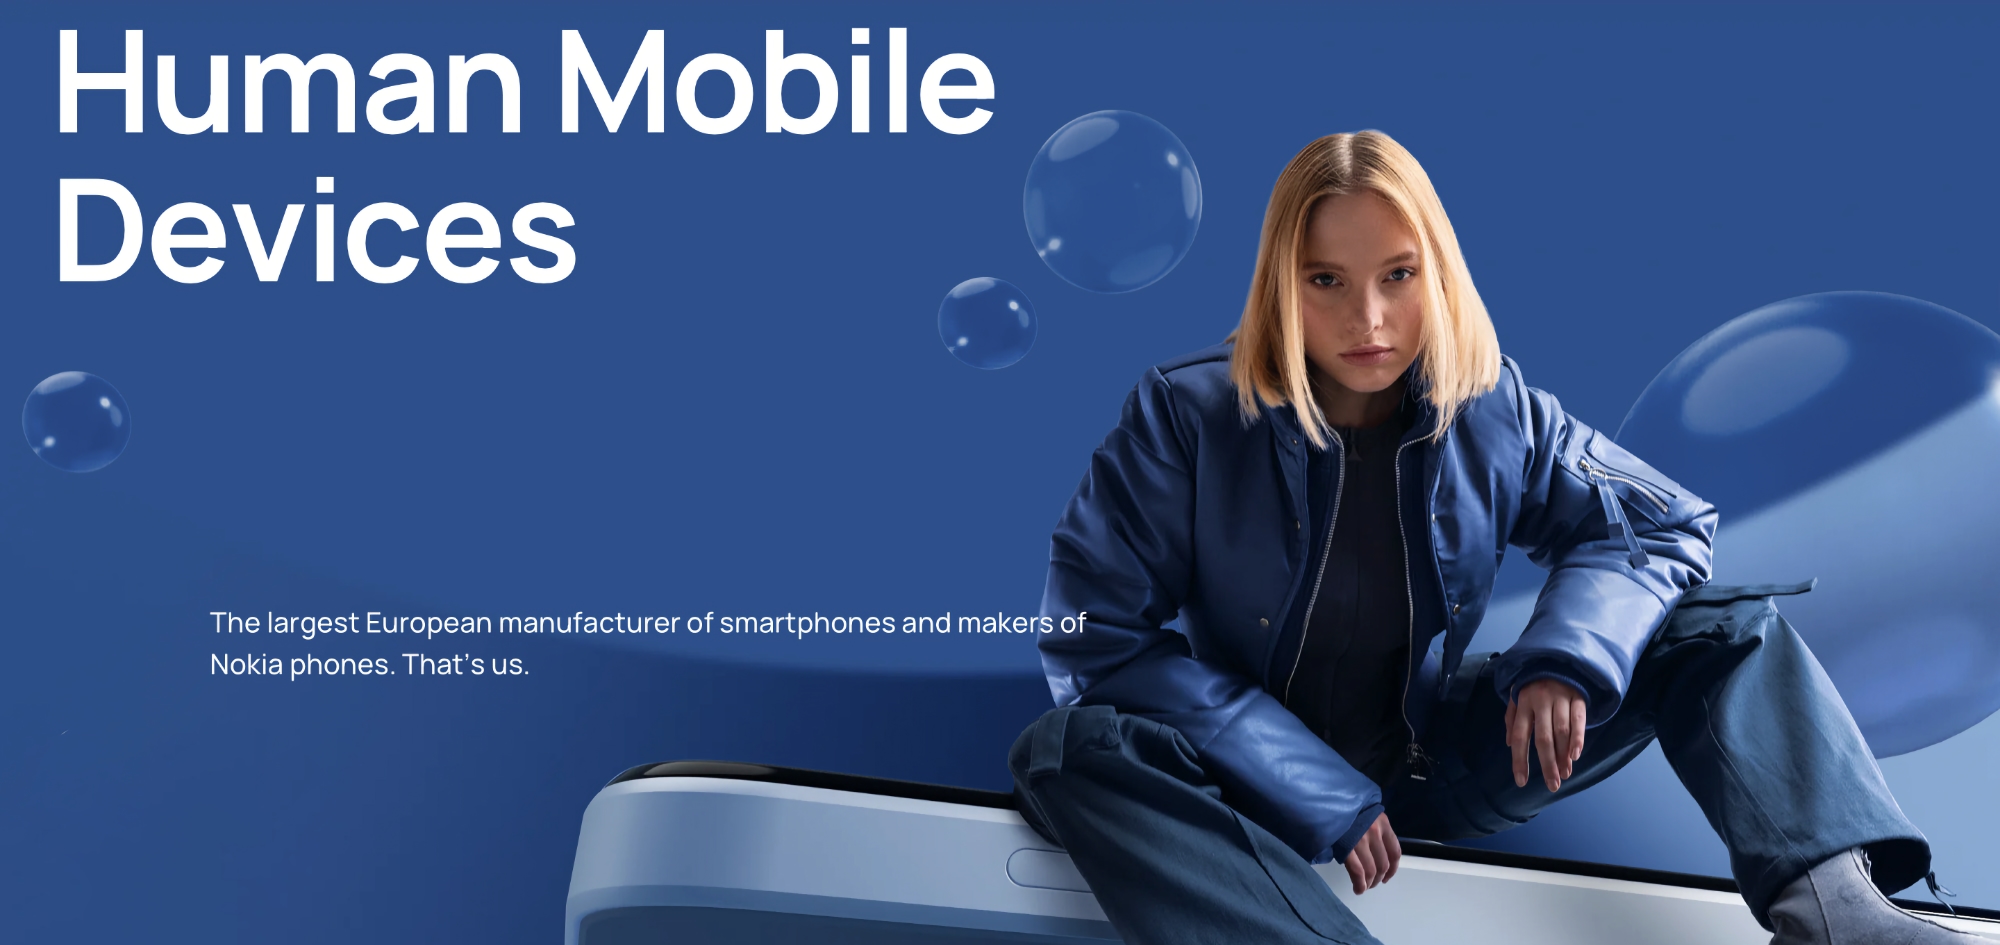 Strategia wielu marek: HMD Global wprowadzi na rynek smartfony Nokia wraz z markowymi urządzeniami